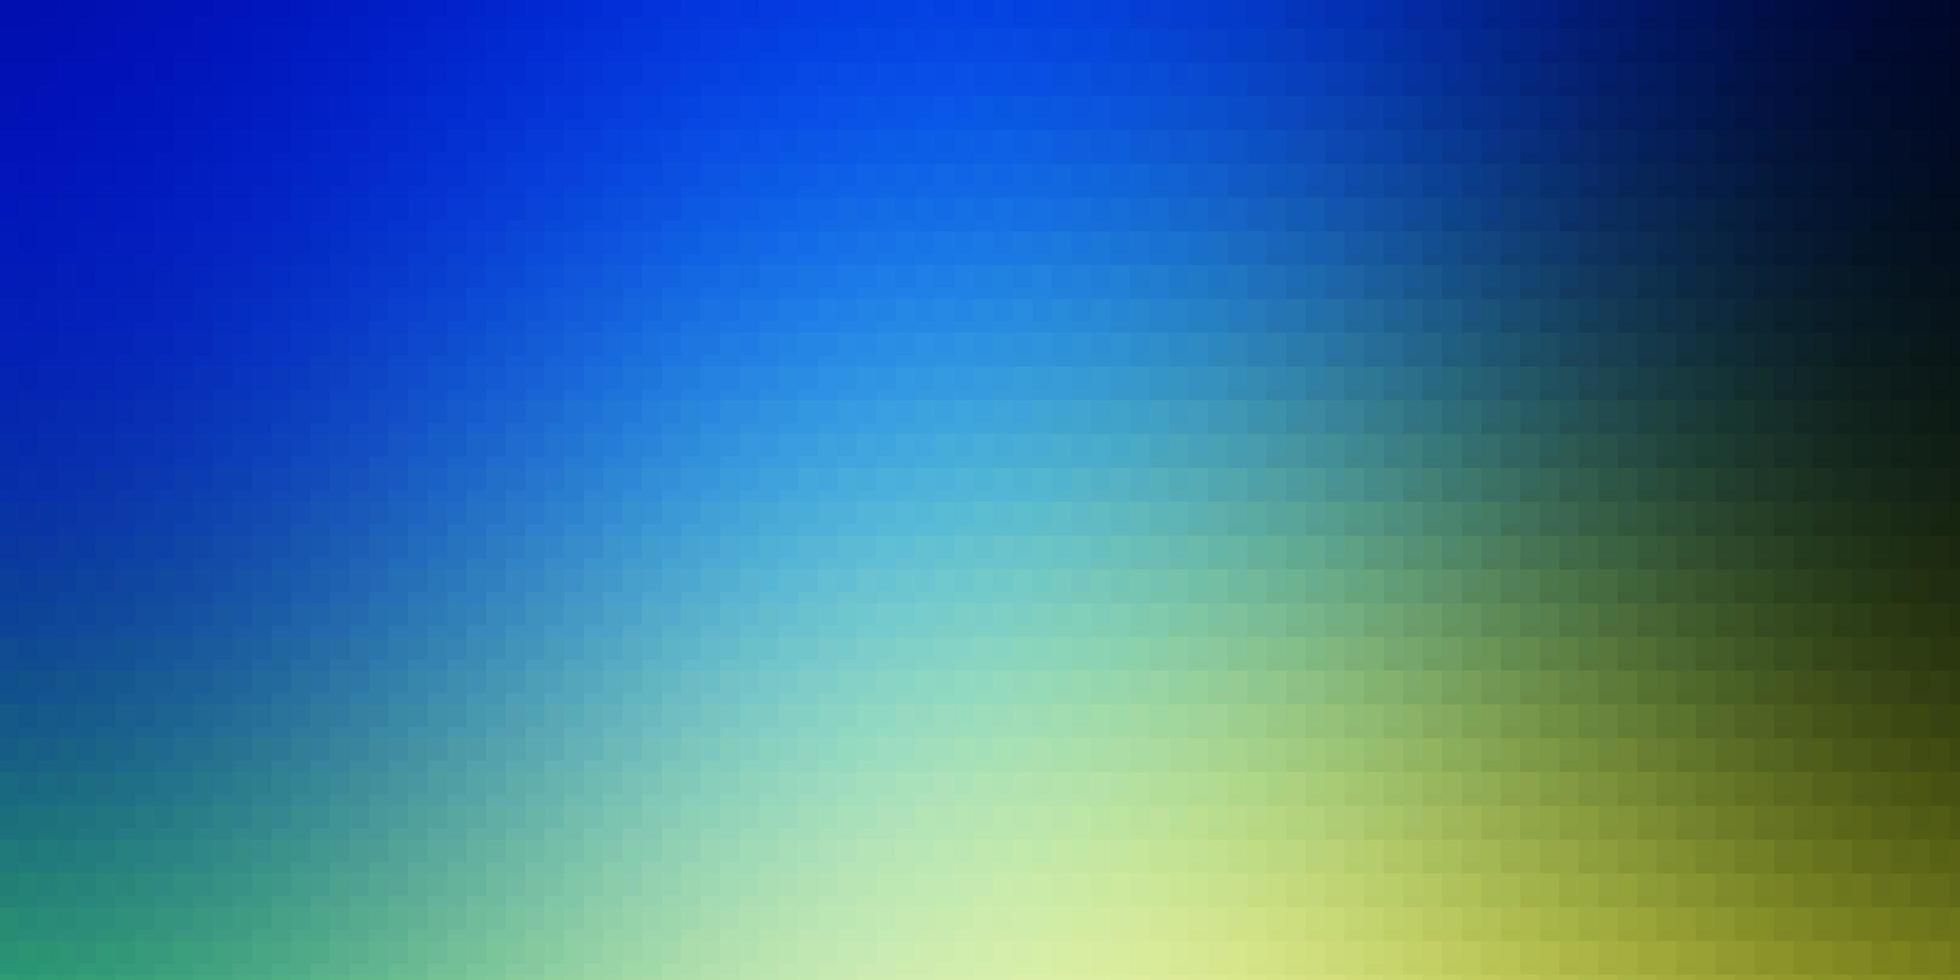 layout de vetor de azul claro e verde com linhas, retângulos.